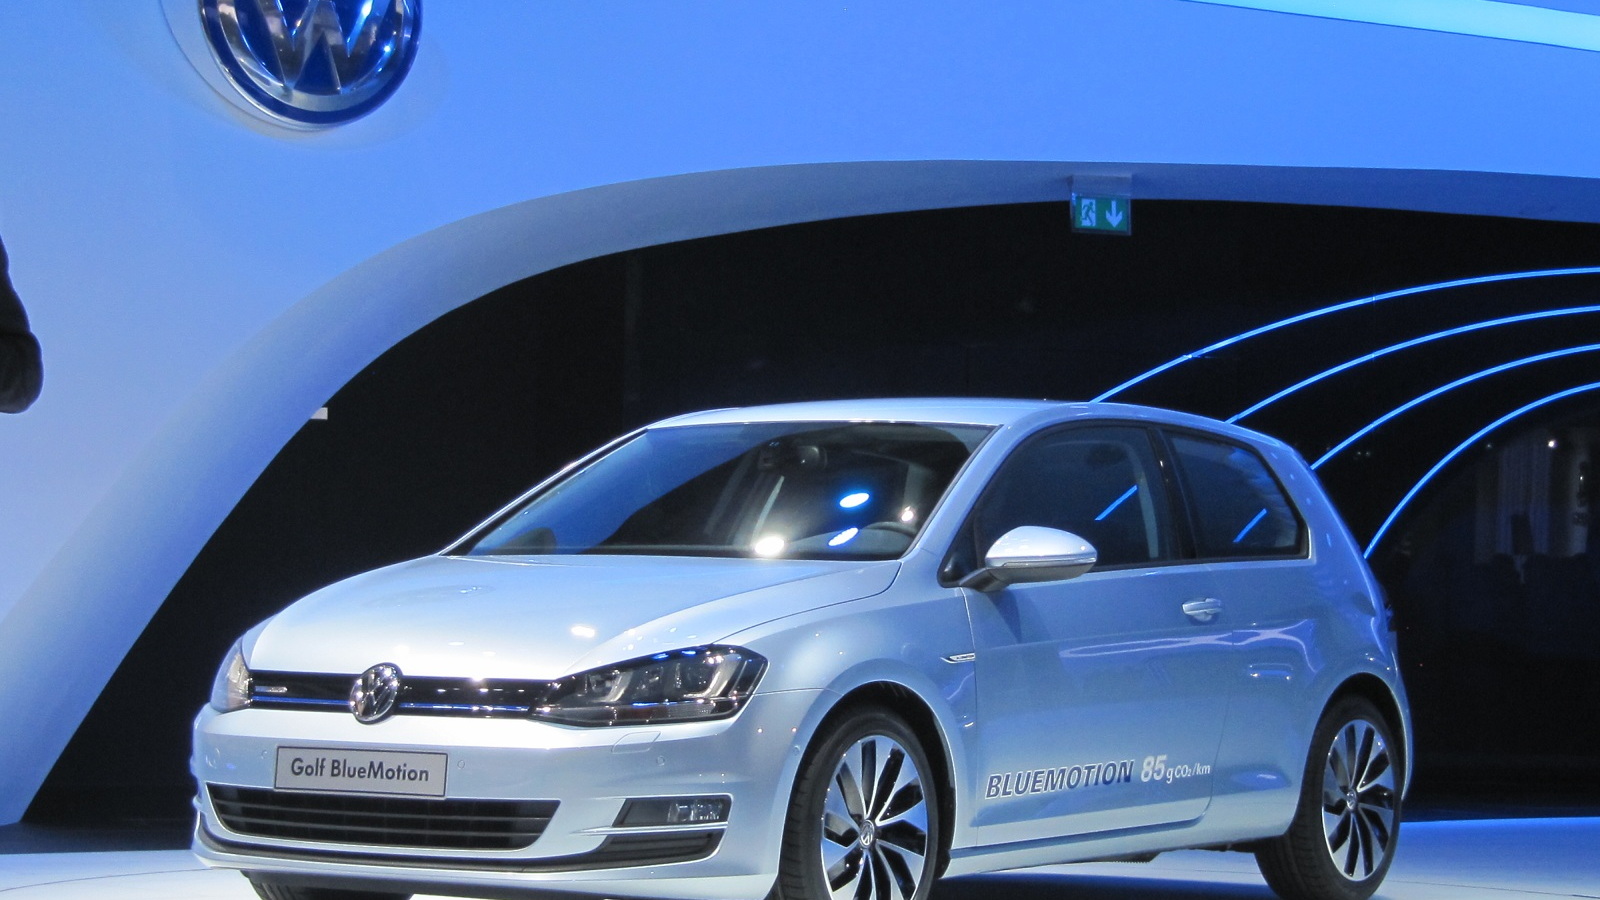 2013 Volkswagen Golf BlueMotion (European model), 2012 Paris Motor Show